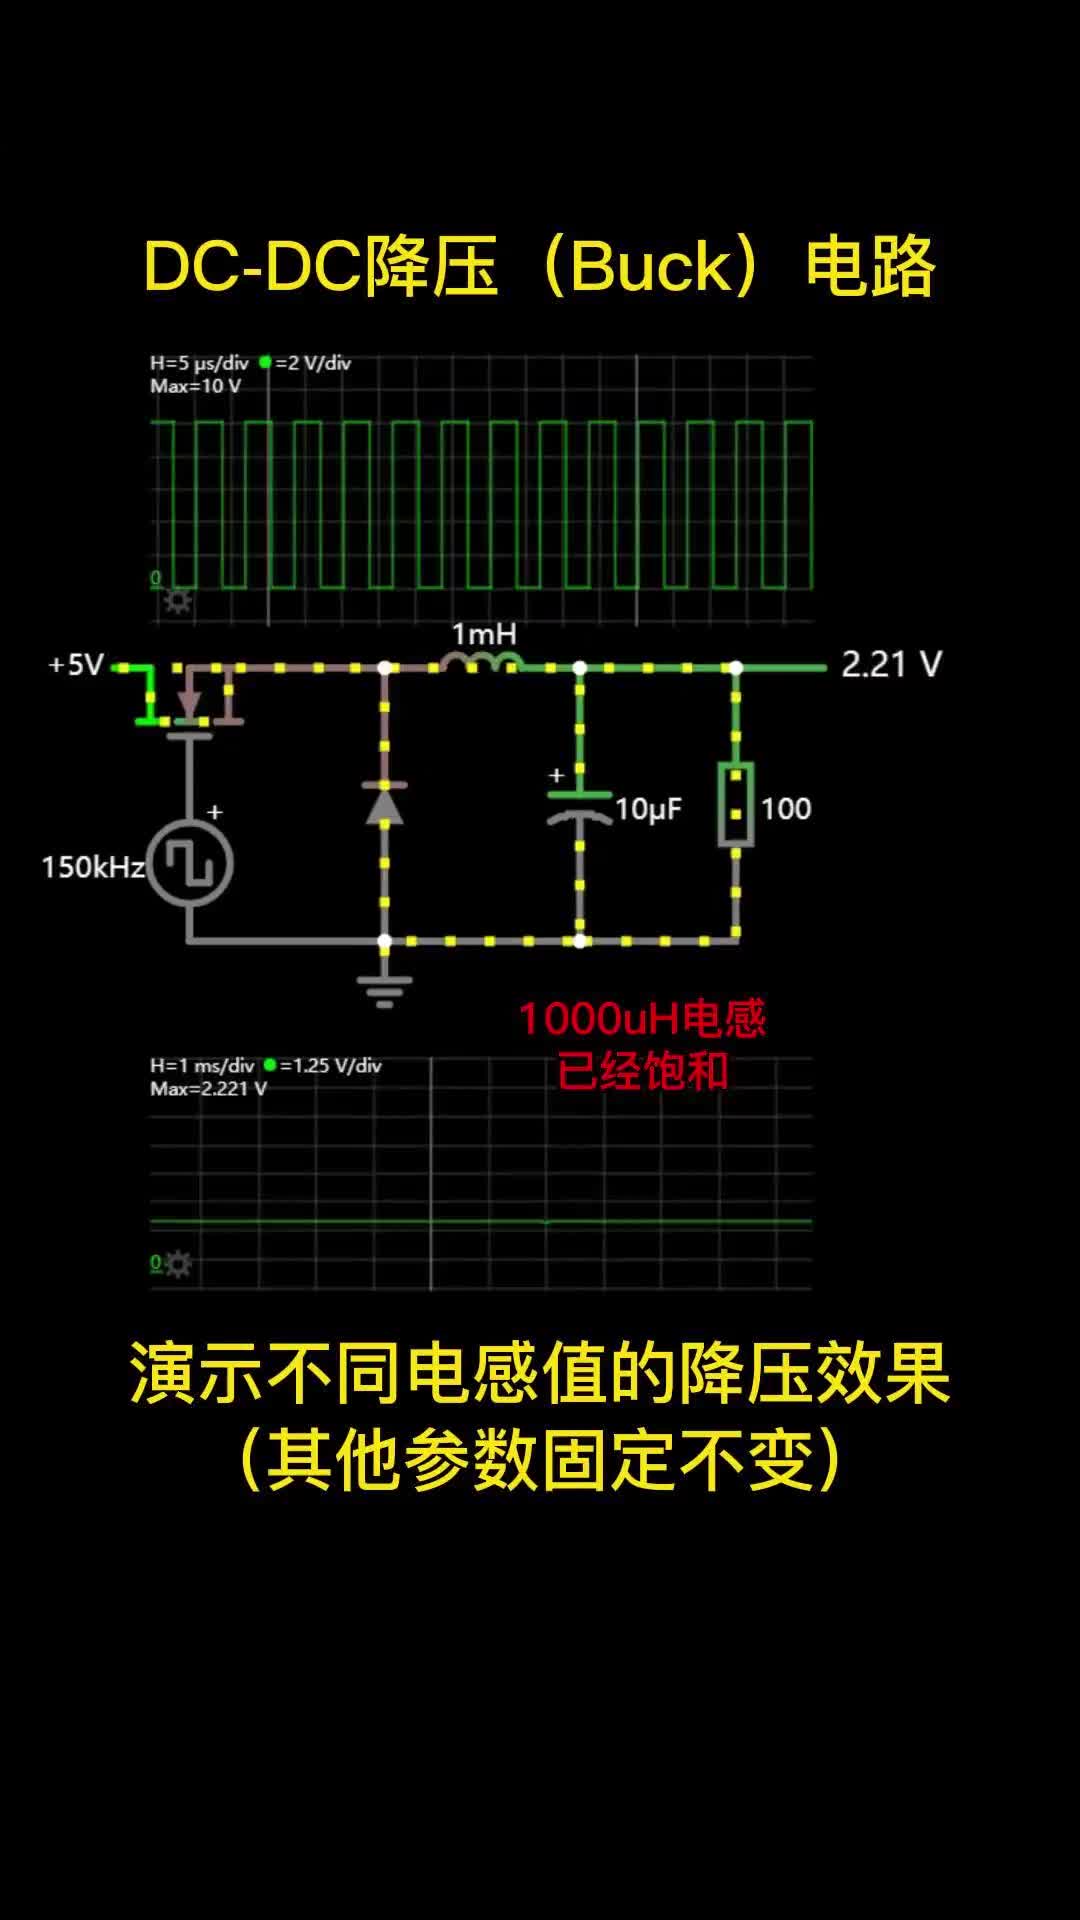 00002 DC-DC降压(Buck)电路，演示不同电感值的降压效果（其他参数固定不变）电子森林 